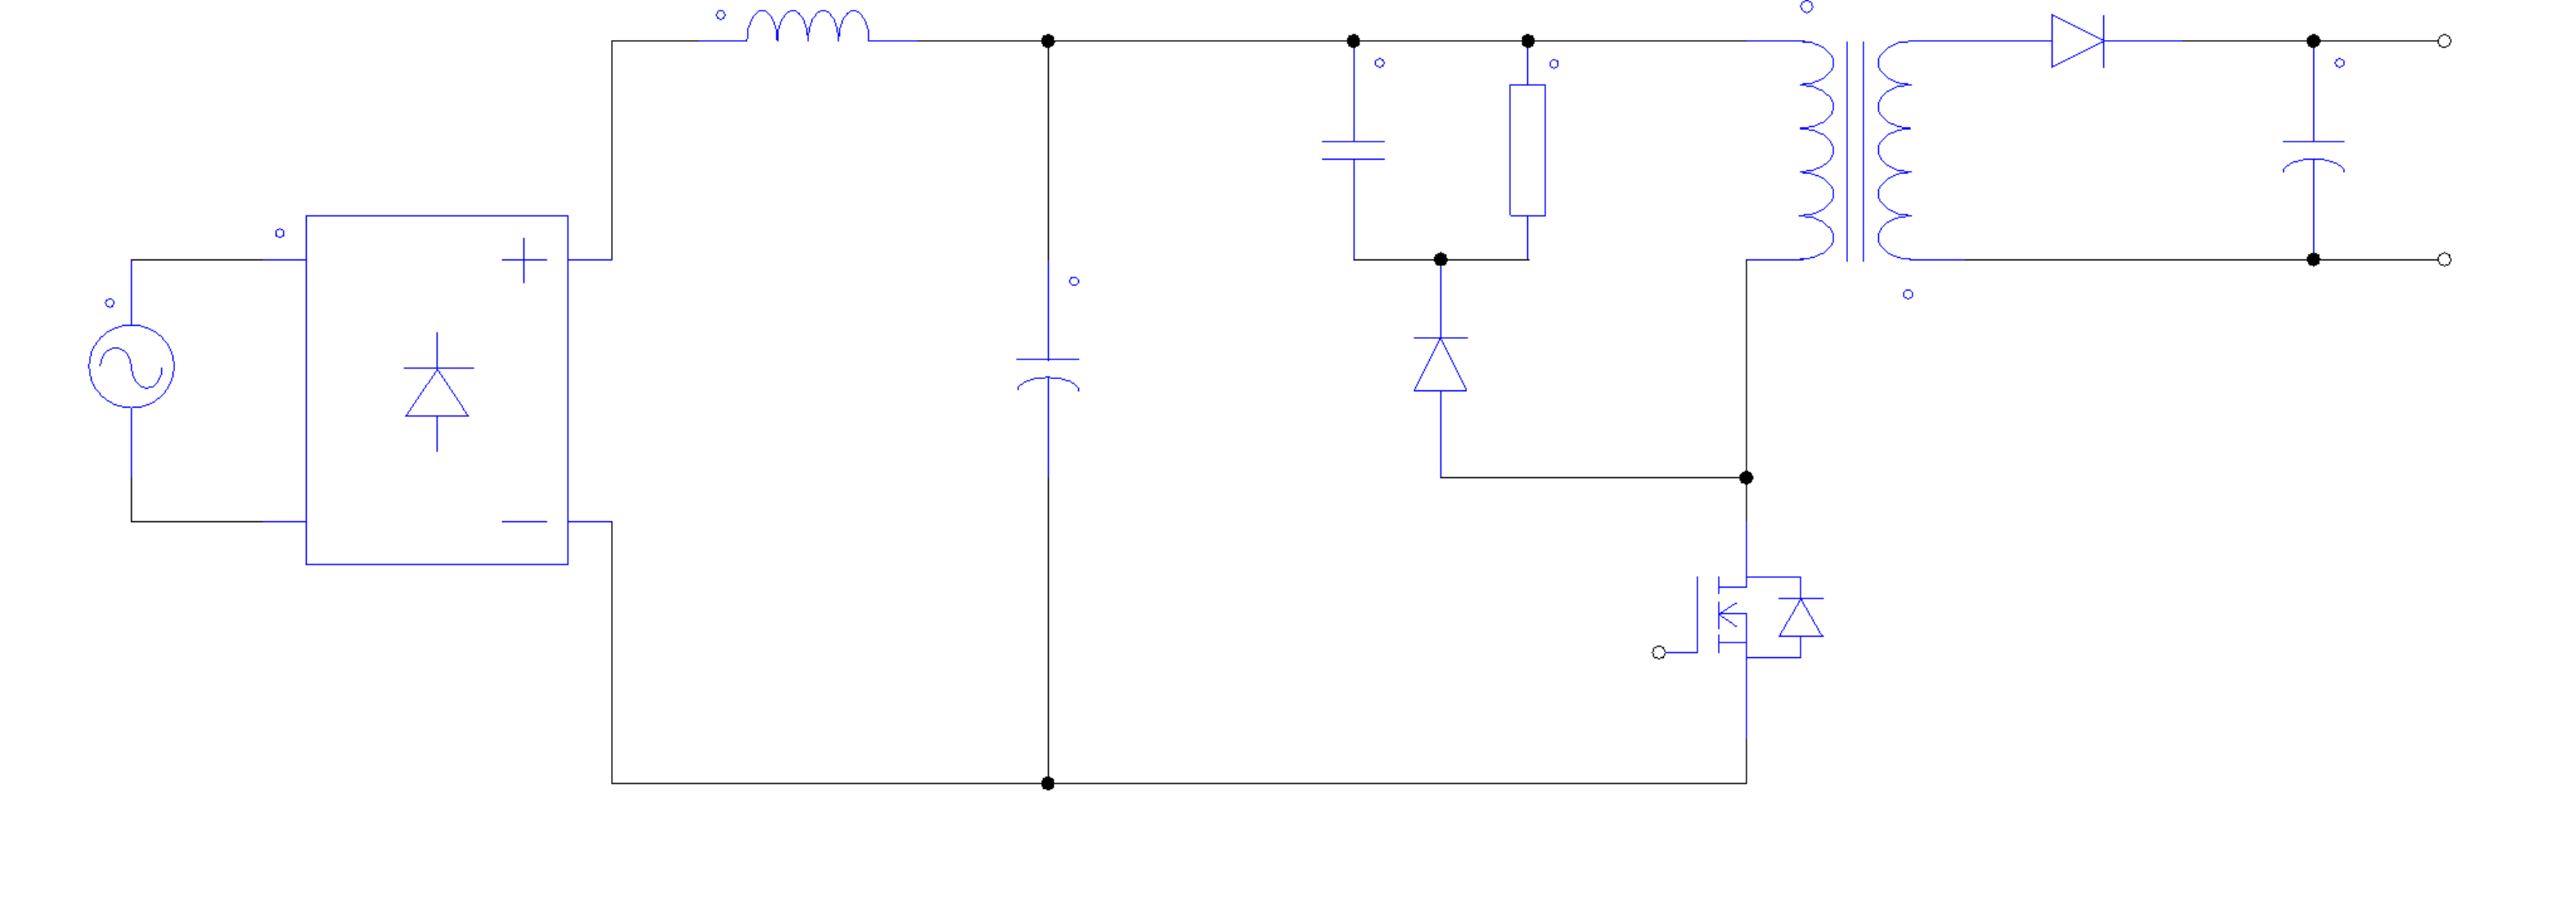 美浦森超结MOS在照明电源中的应用(图2)